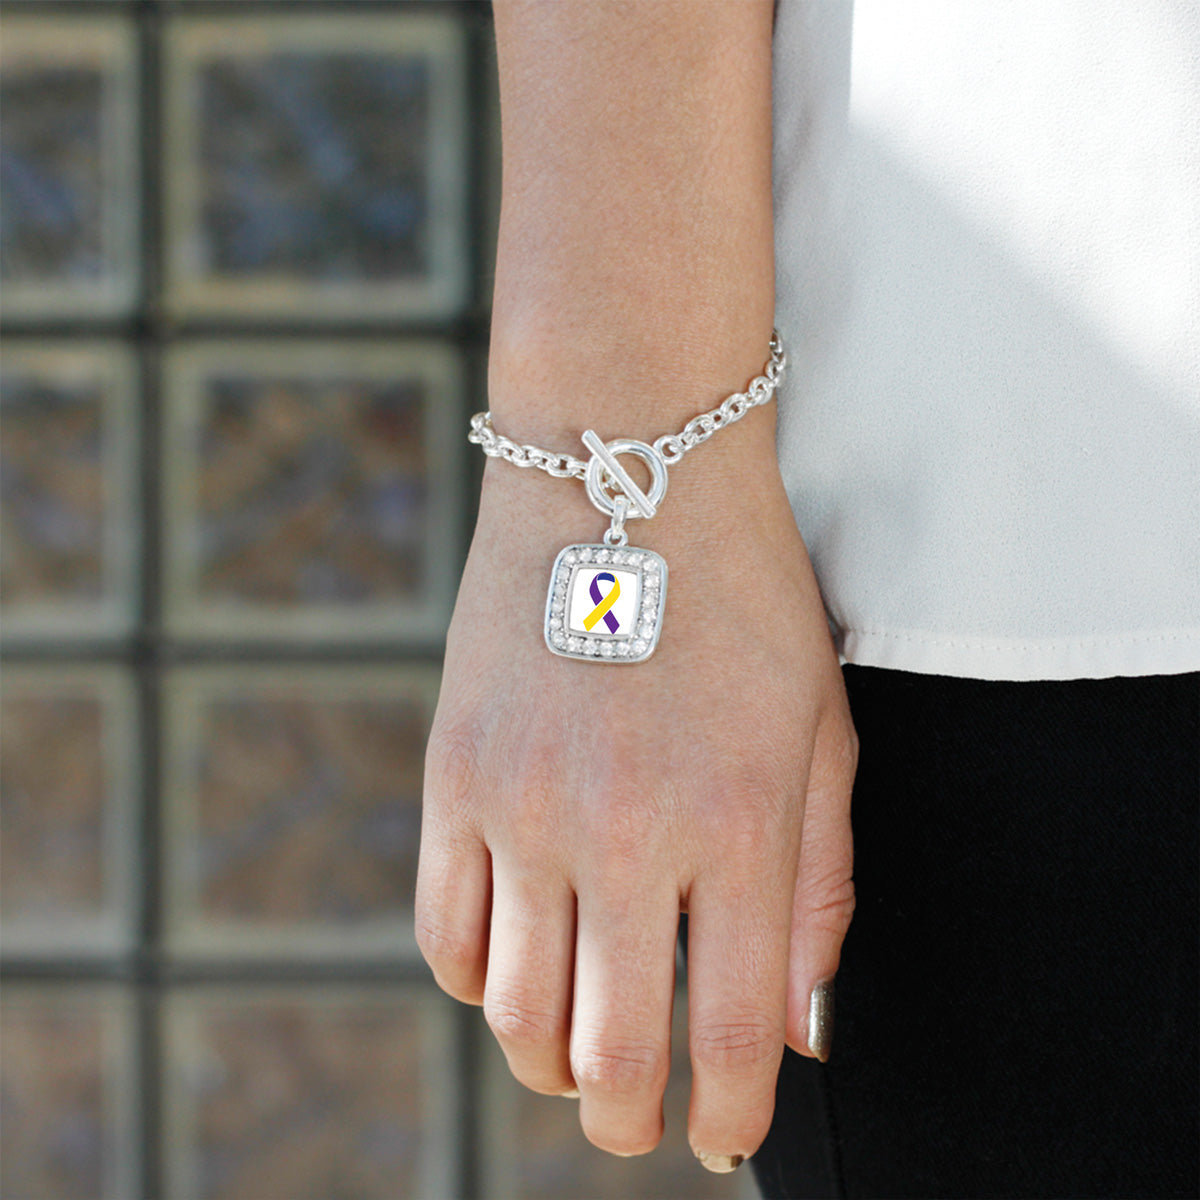 Silver Bladder Cancer Awareness Square Charm Toggle Bracelet